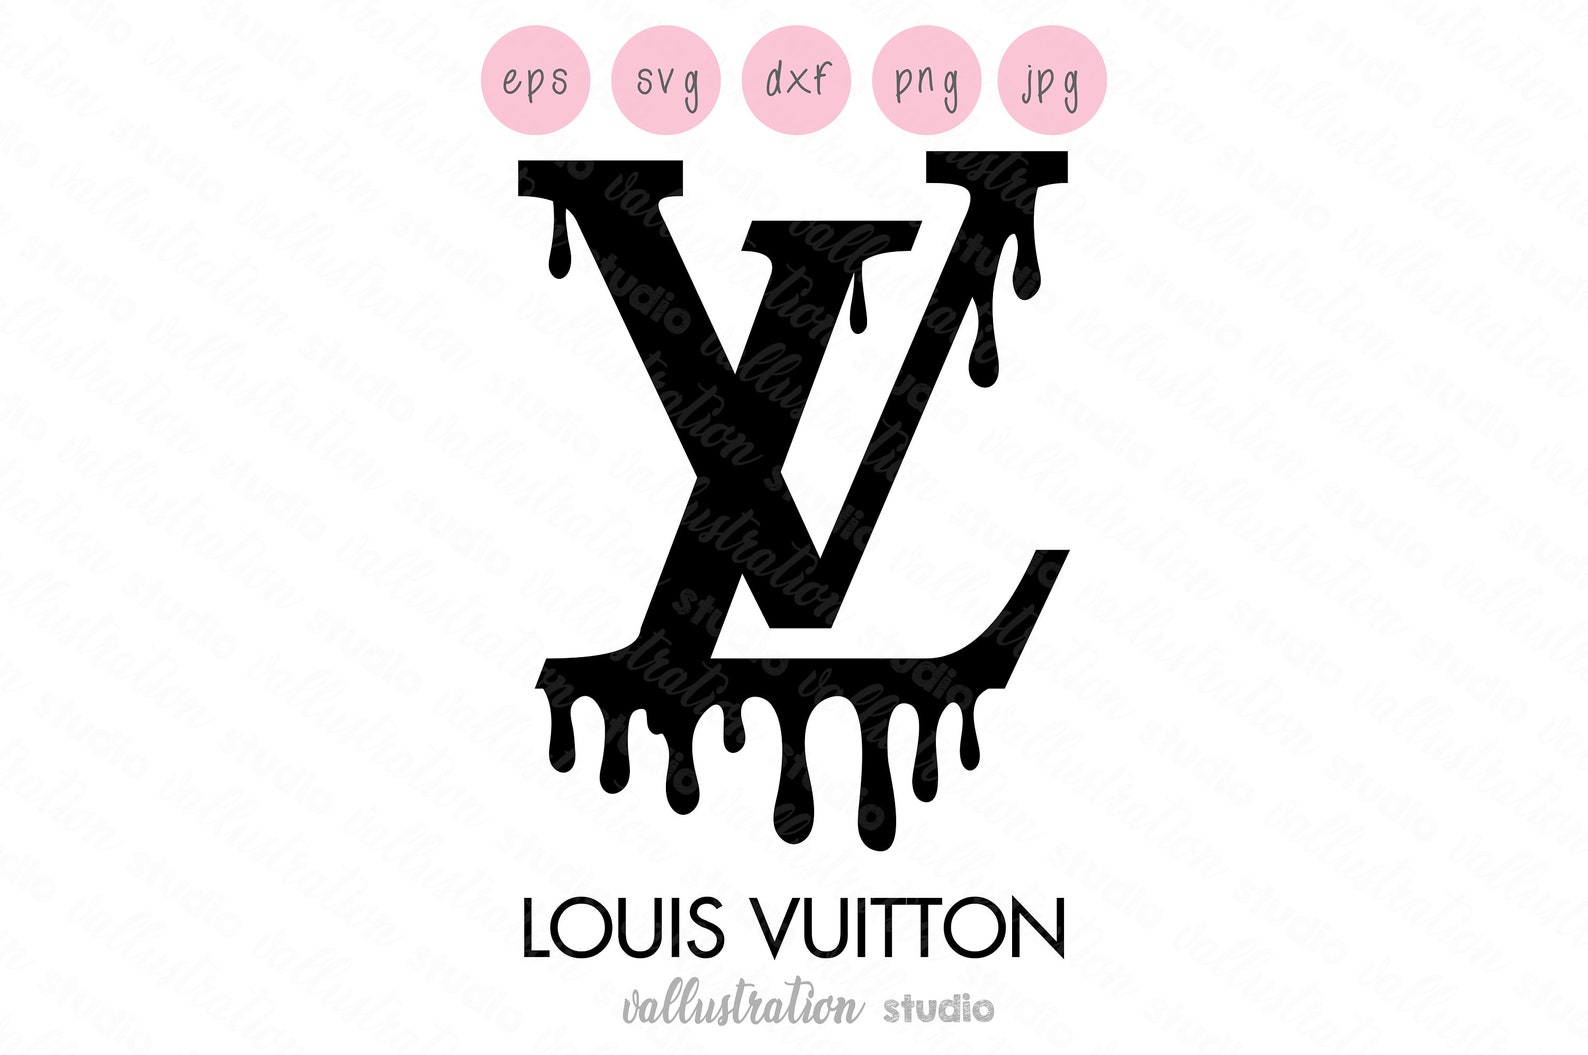 Check out @leavingeasts.net elegant louis vuitton designer logo